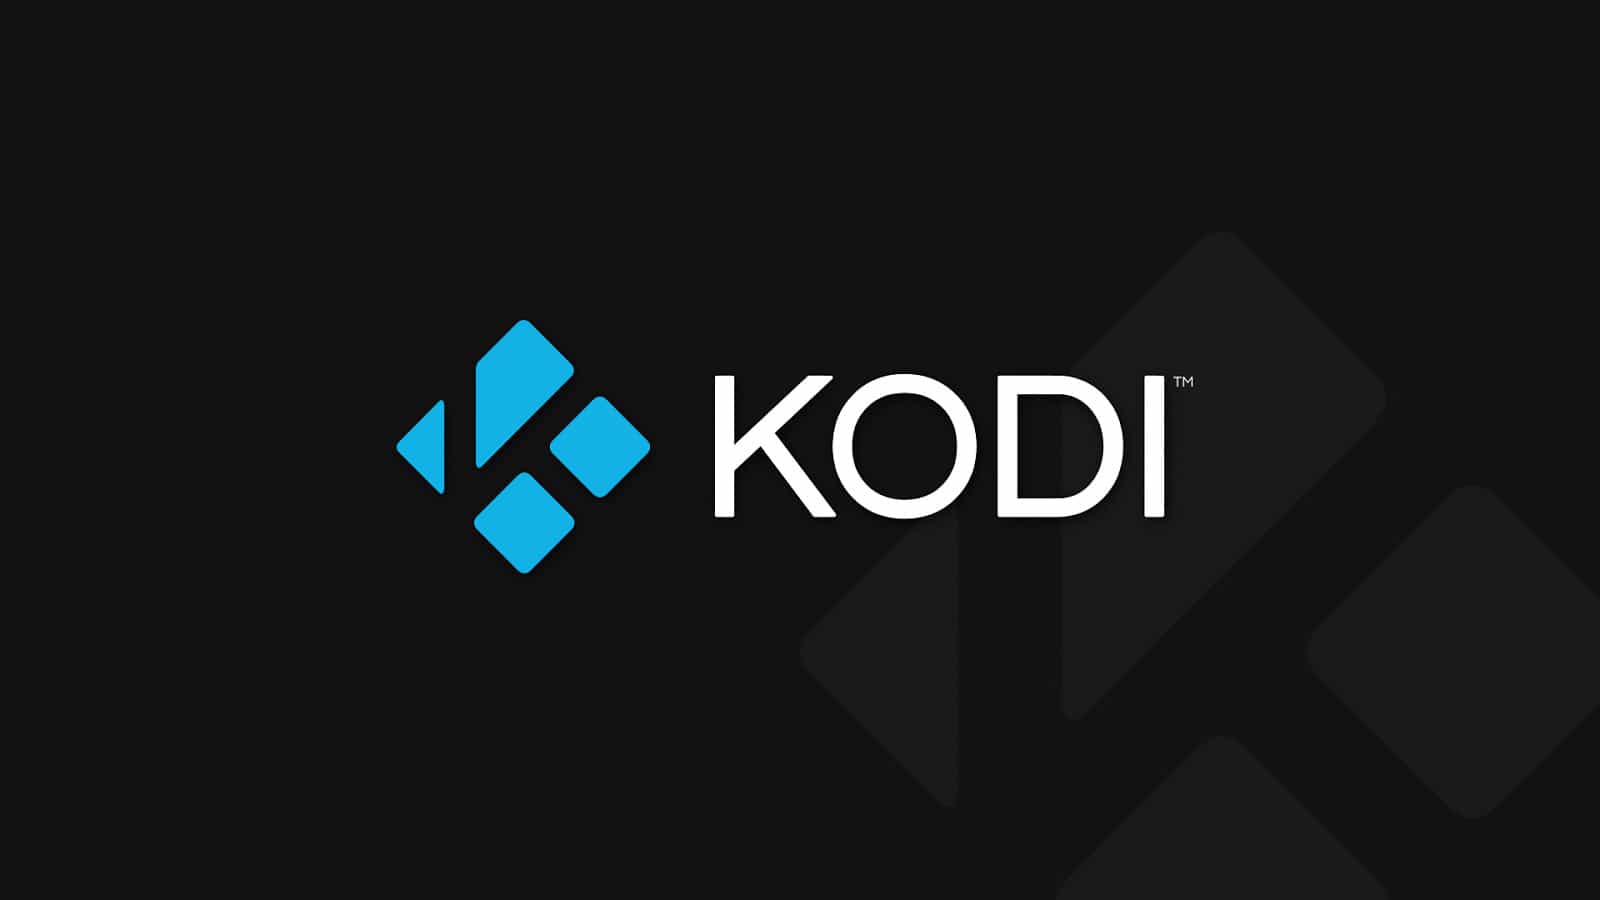 Kodi downloaden: Een stap-voor-stap handleiding